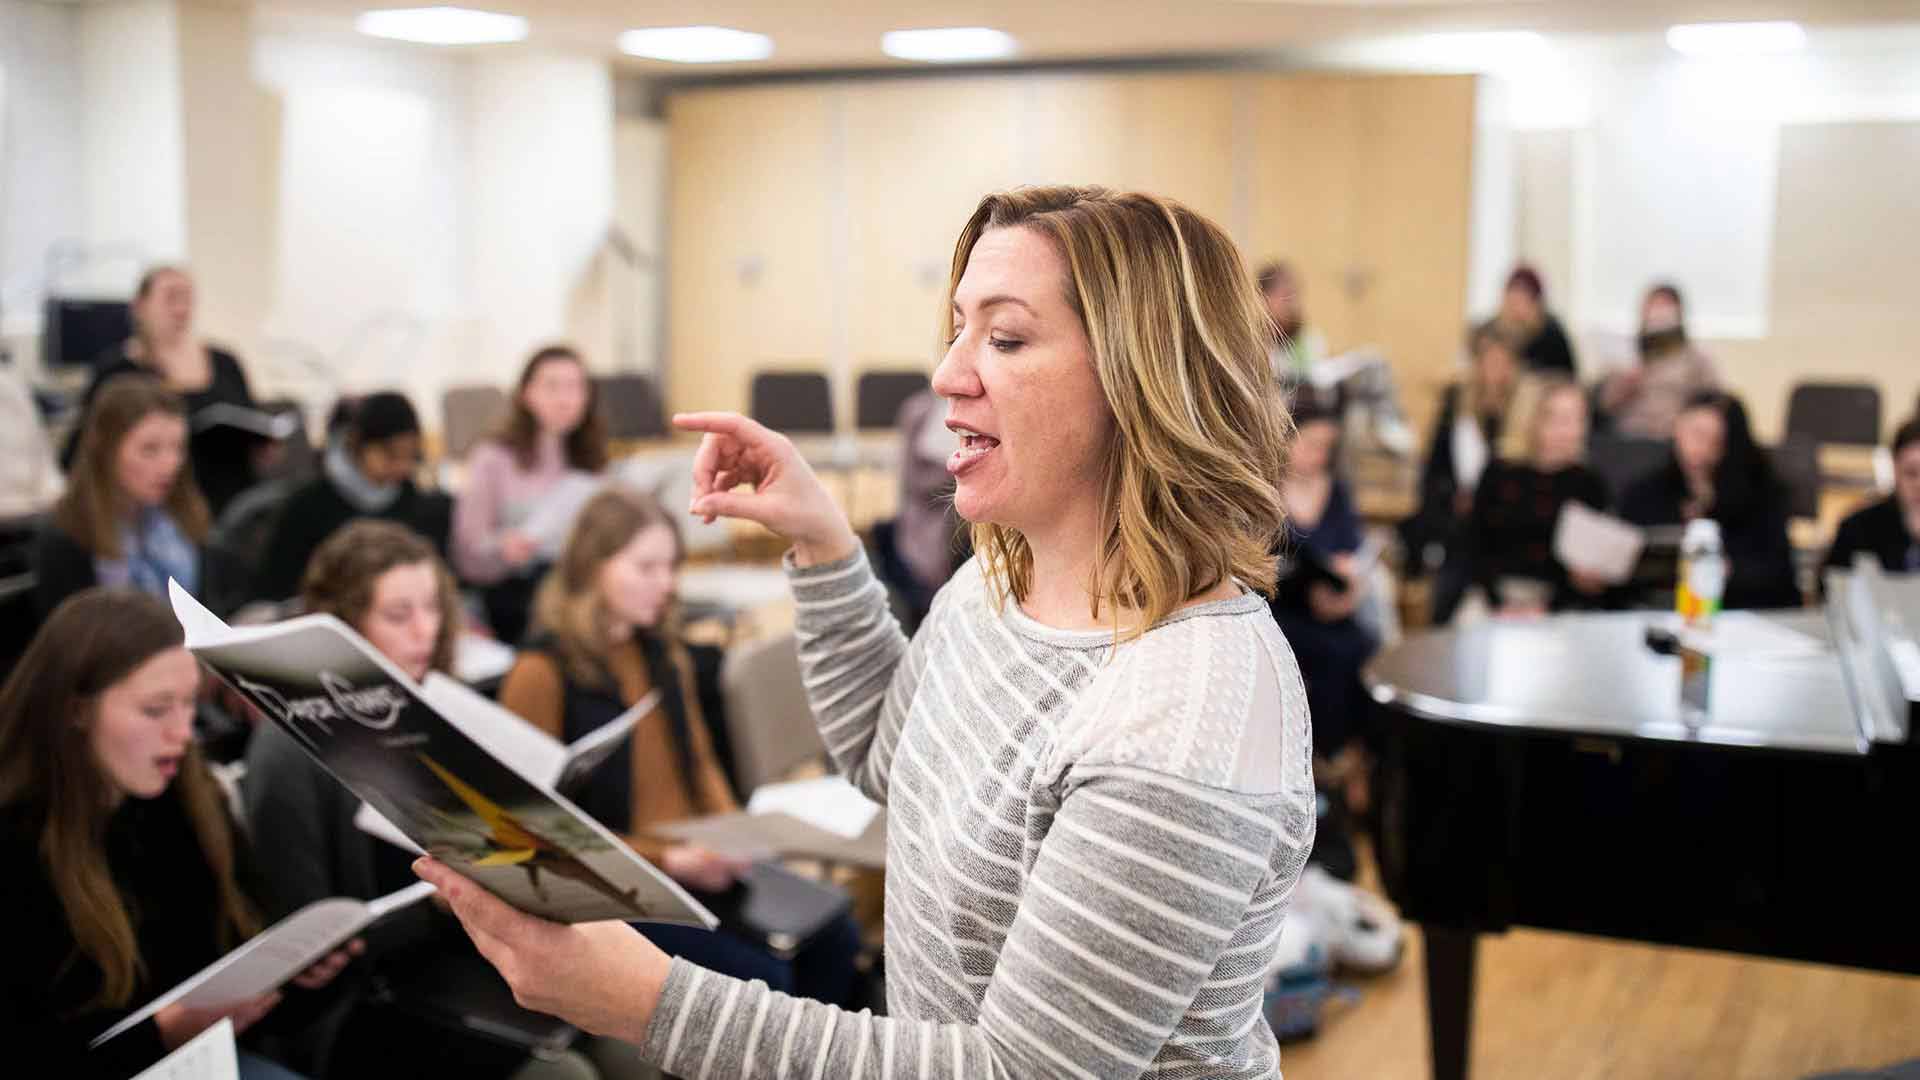 A choir director leads during a rehearsal.